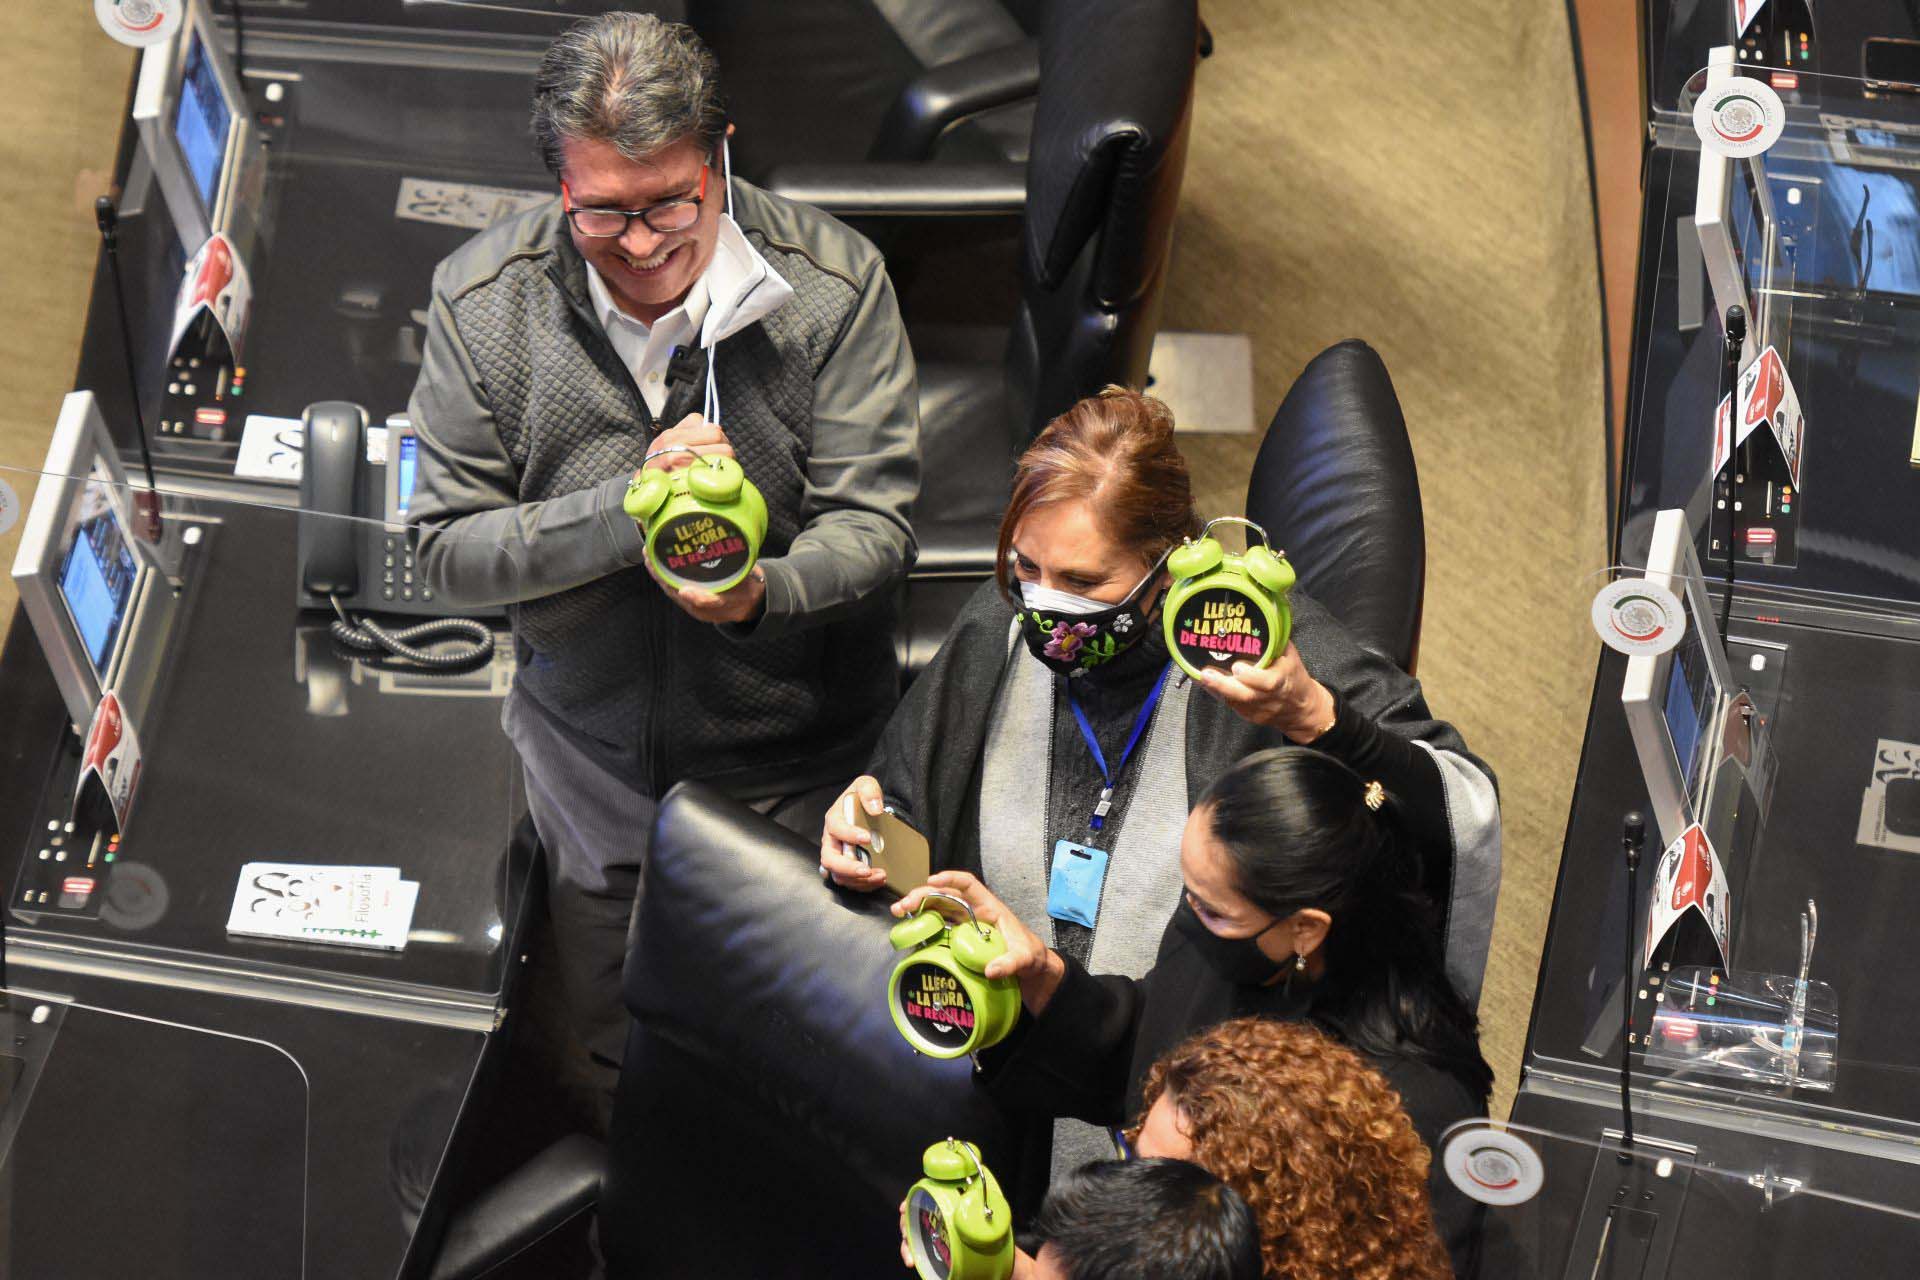 Los senadores llevaron relojes que indicaban que "ya es hora" de legislar (Foto: Daniel Augusto/ Cuartoscuro)